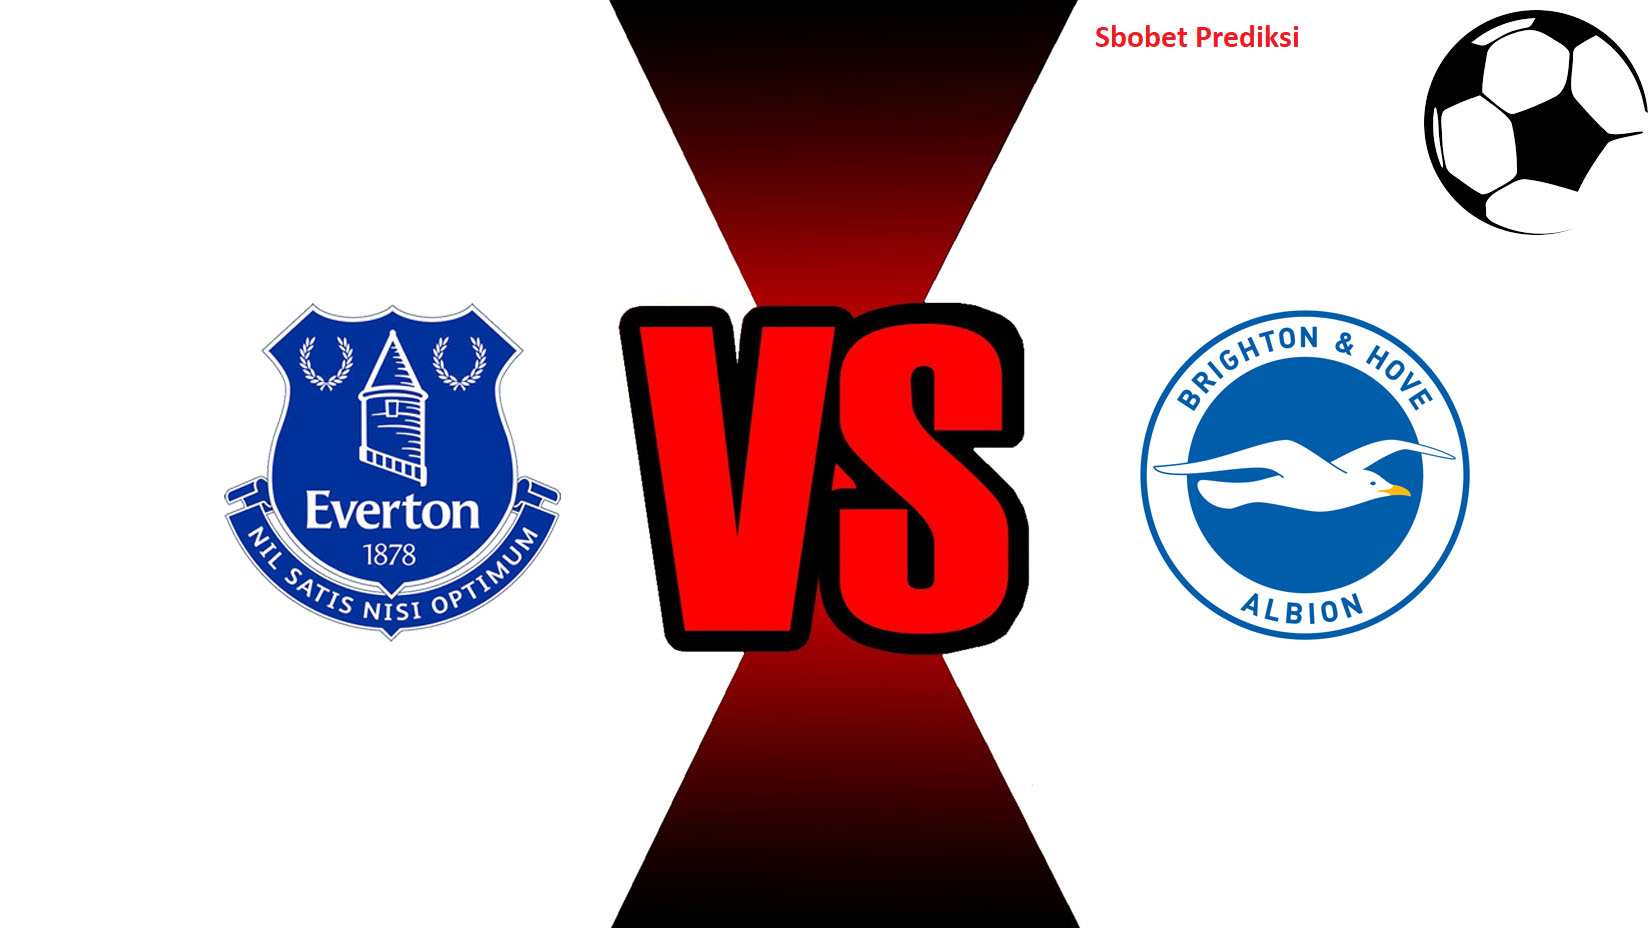 Prediksi Skor Bola Online Everton vs Brighton & Hove Albion 3 November 2018